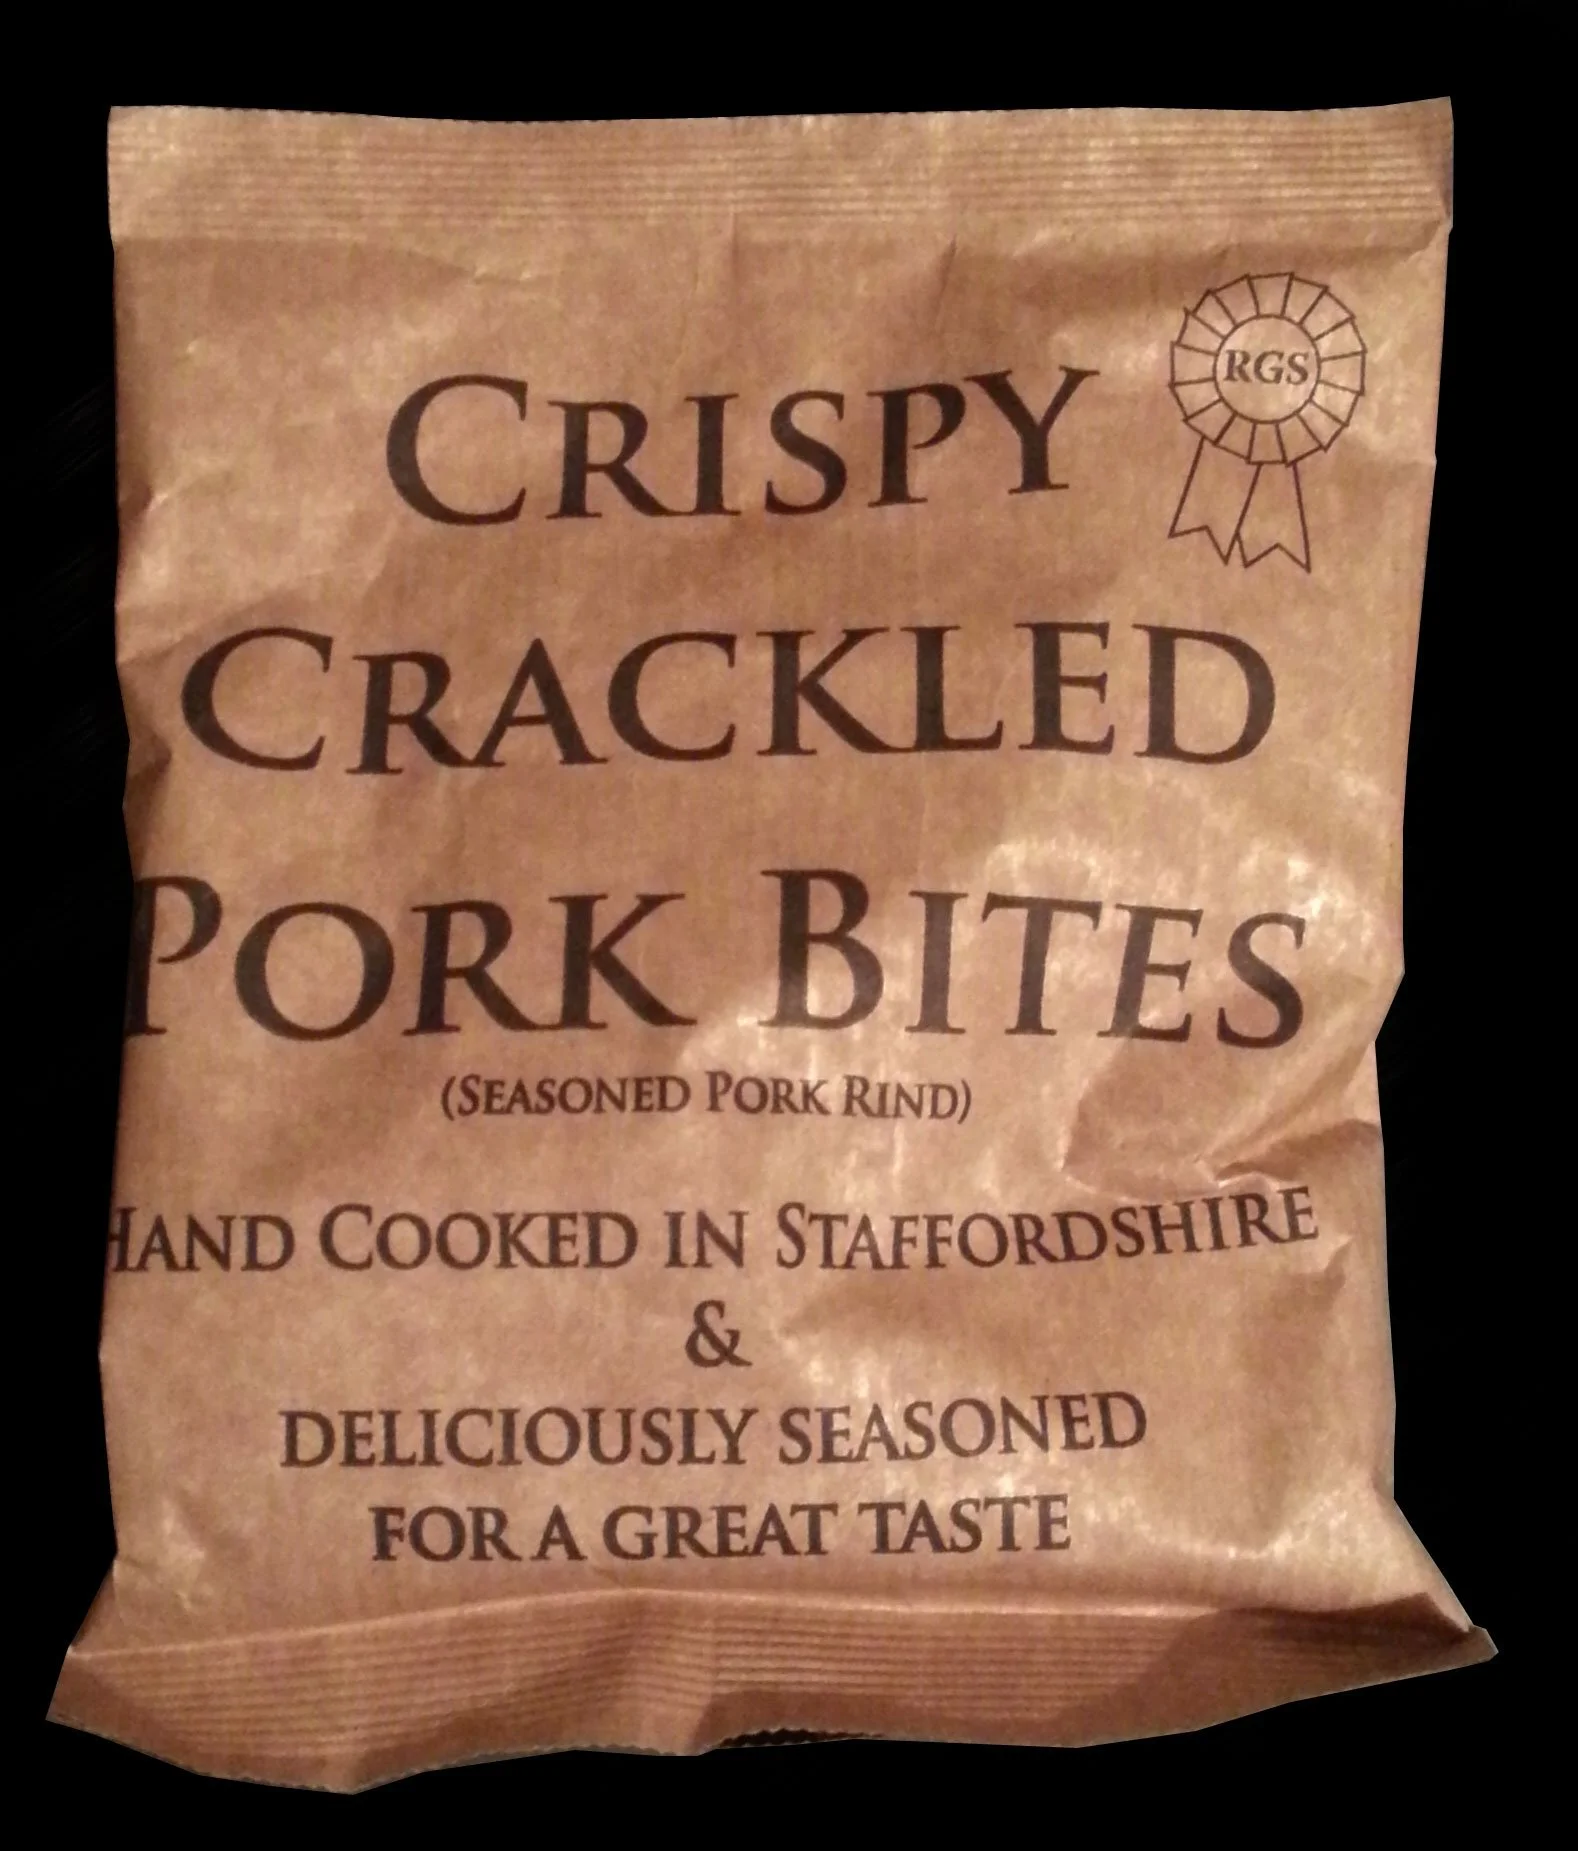 RGS Crispy Crackled Pork Bites Review - RGS, Crispy Crackled Pork Bites Review